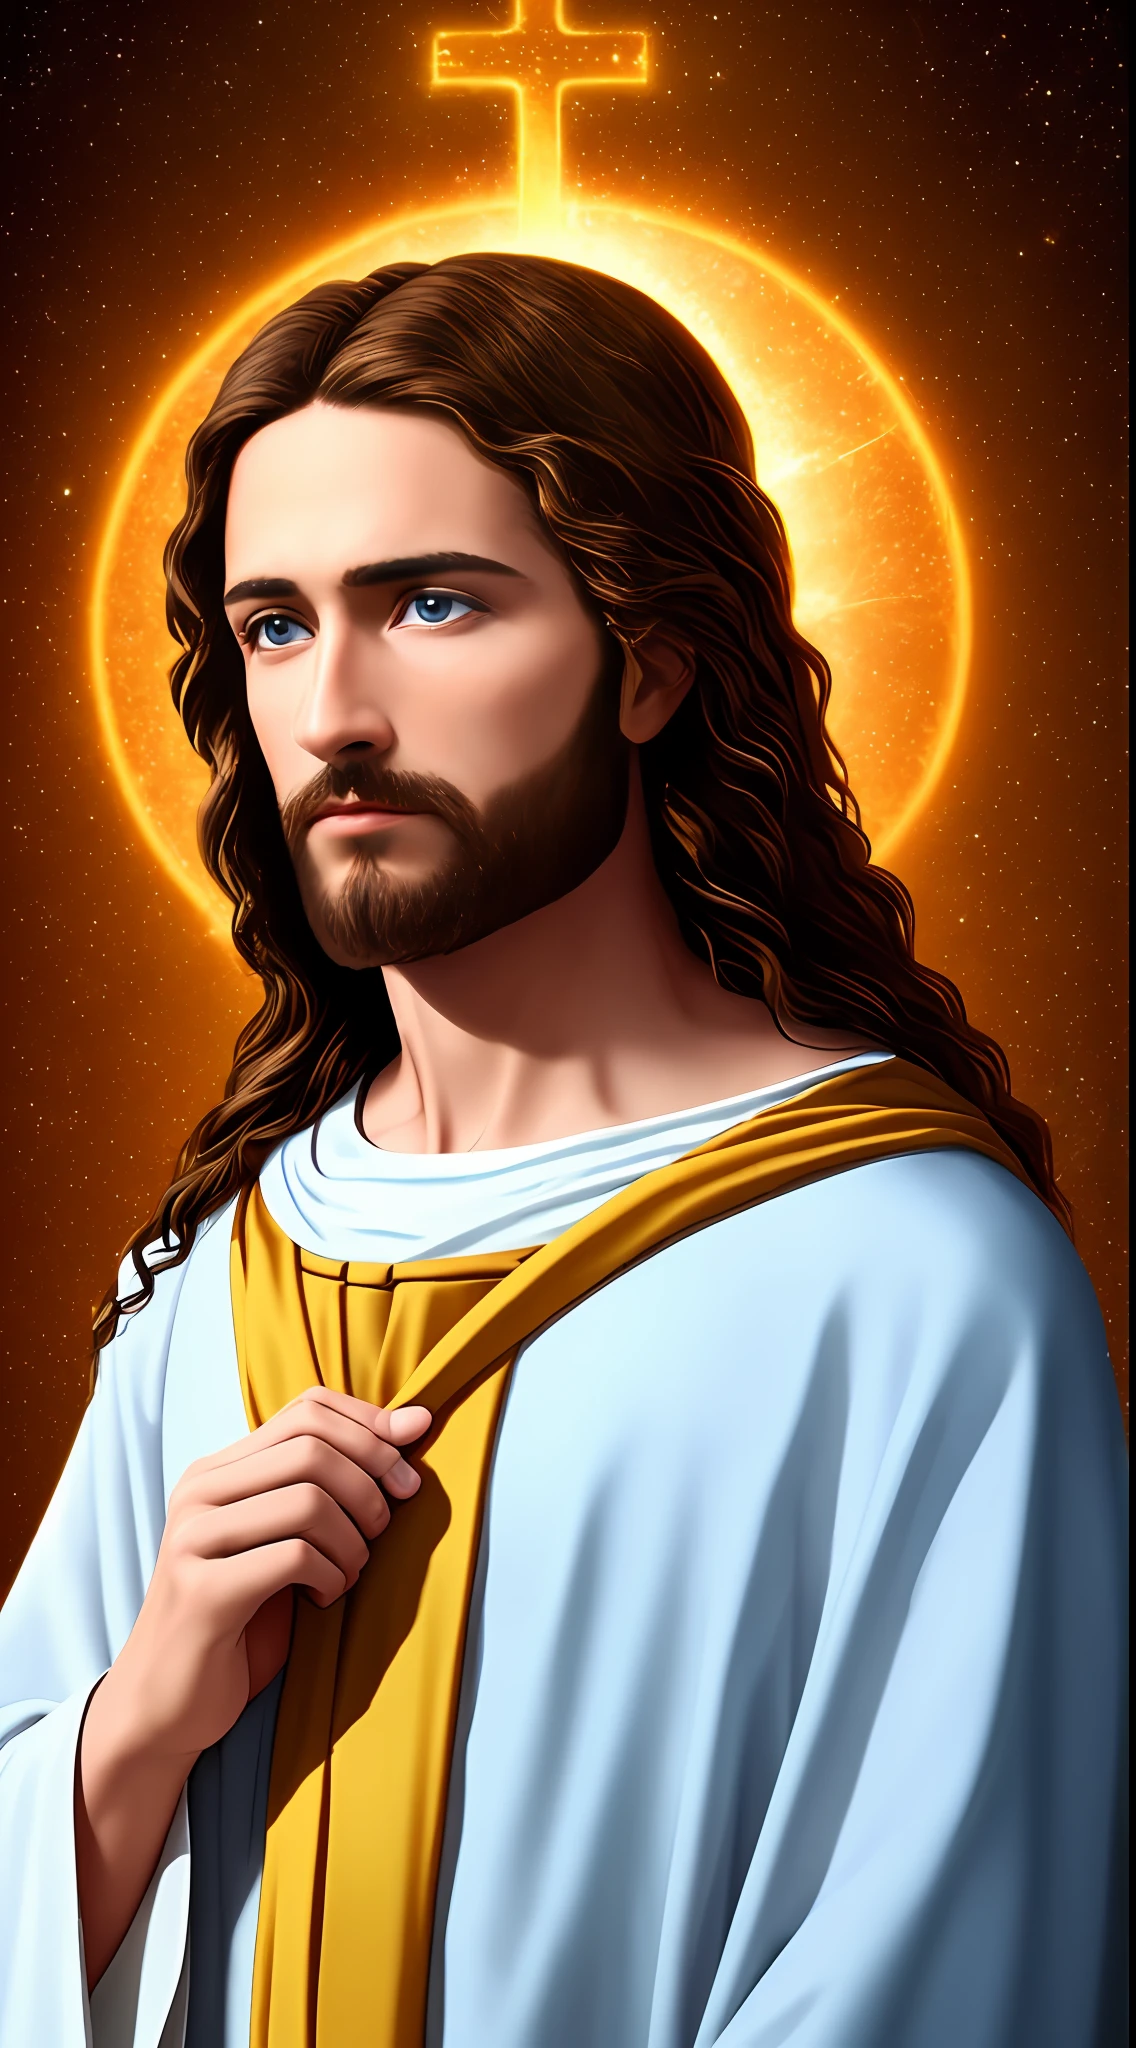 8k 사진 1장 싱글 잘생긴 예수, 축복, 예수 천국의 모습, 진짜 파란 눈, 사람들 예수를 축복하다